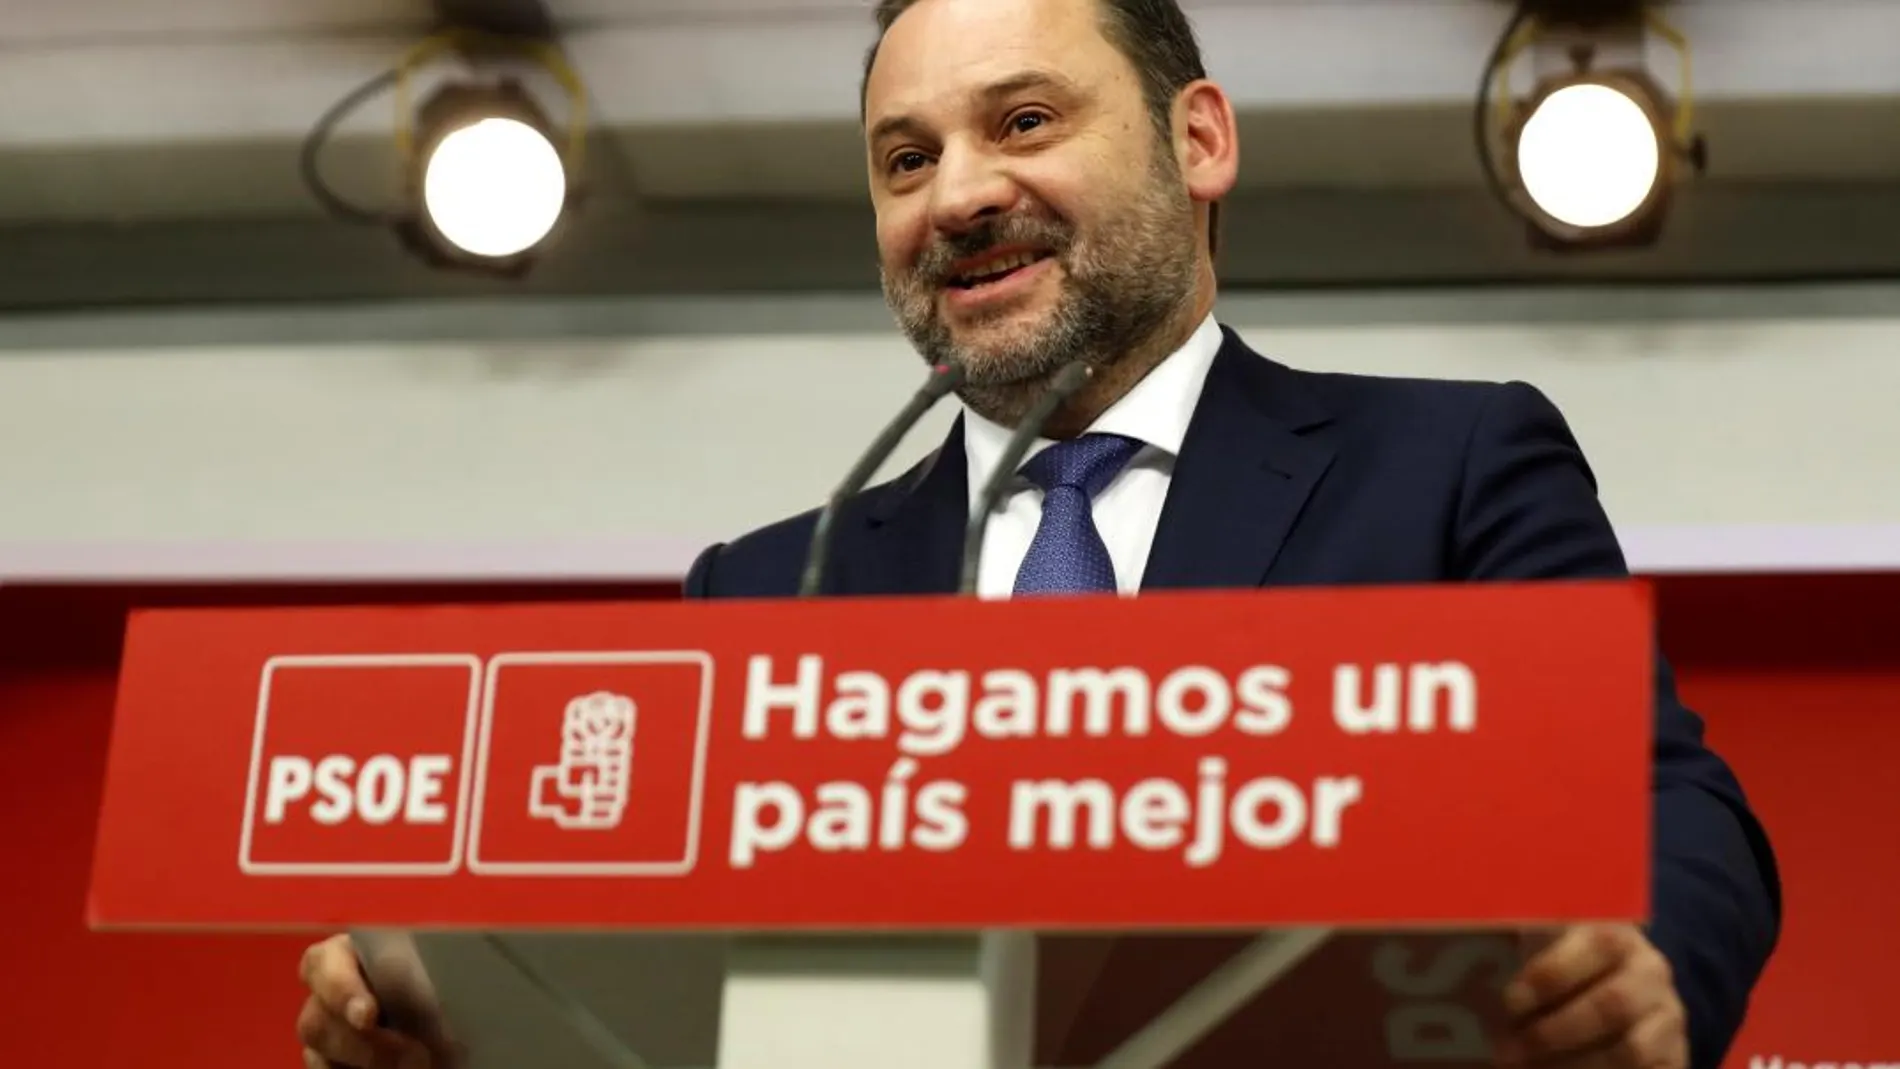 El ministro de Fomento, José Luis Ábalos, durante la rueda de prensa posterior a la reunión de la ejecutiva del PSOE / Efe